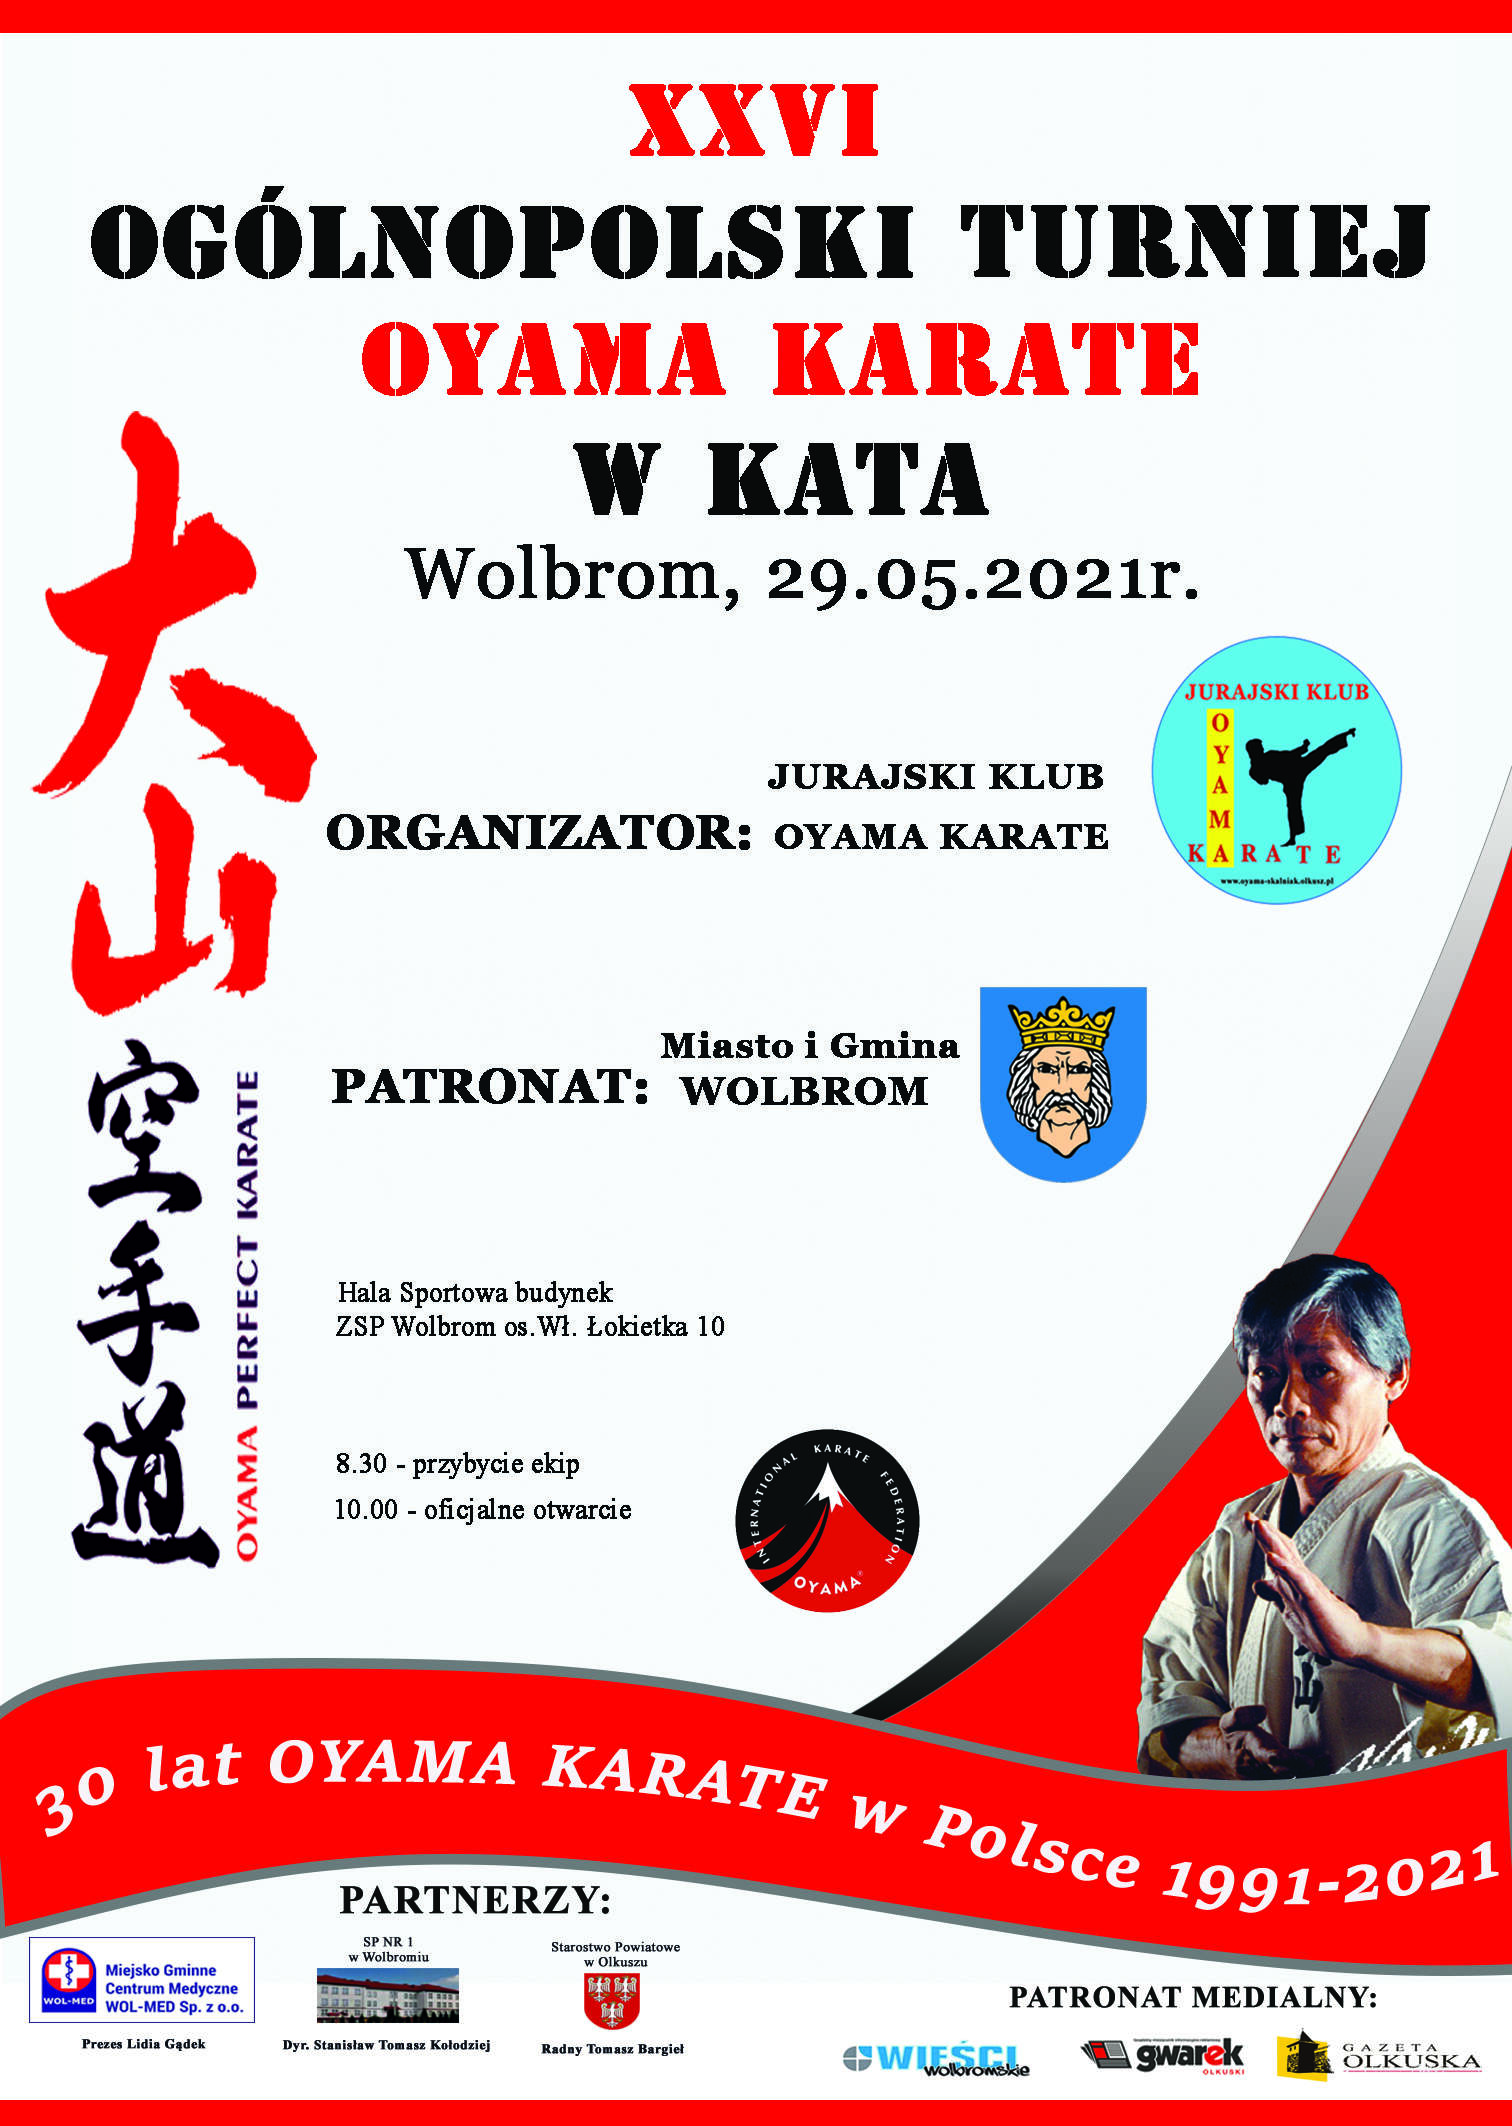 XXVI Ogólnopolski Turniej Oyama Karate w KATA (Wolbrom, 29.05.2021r.)